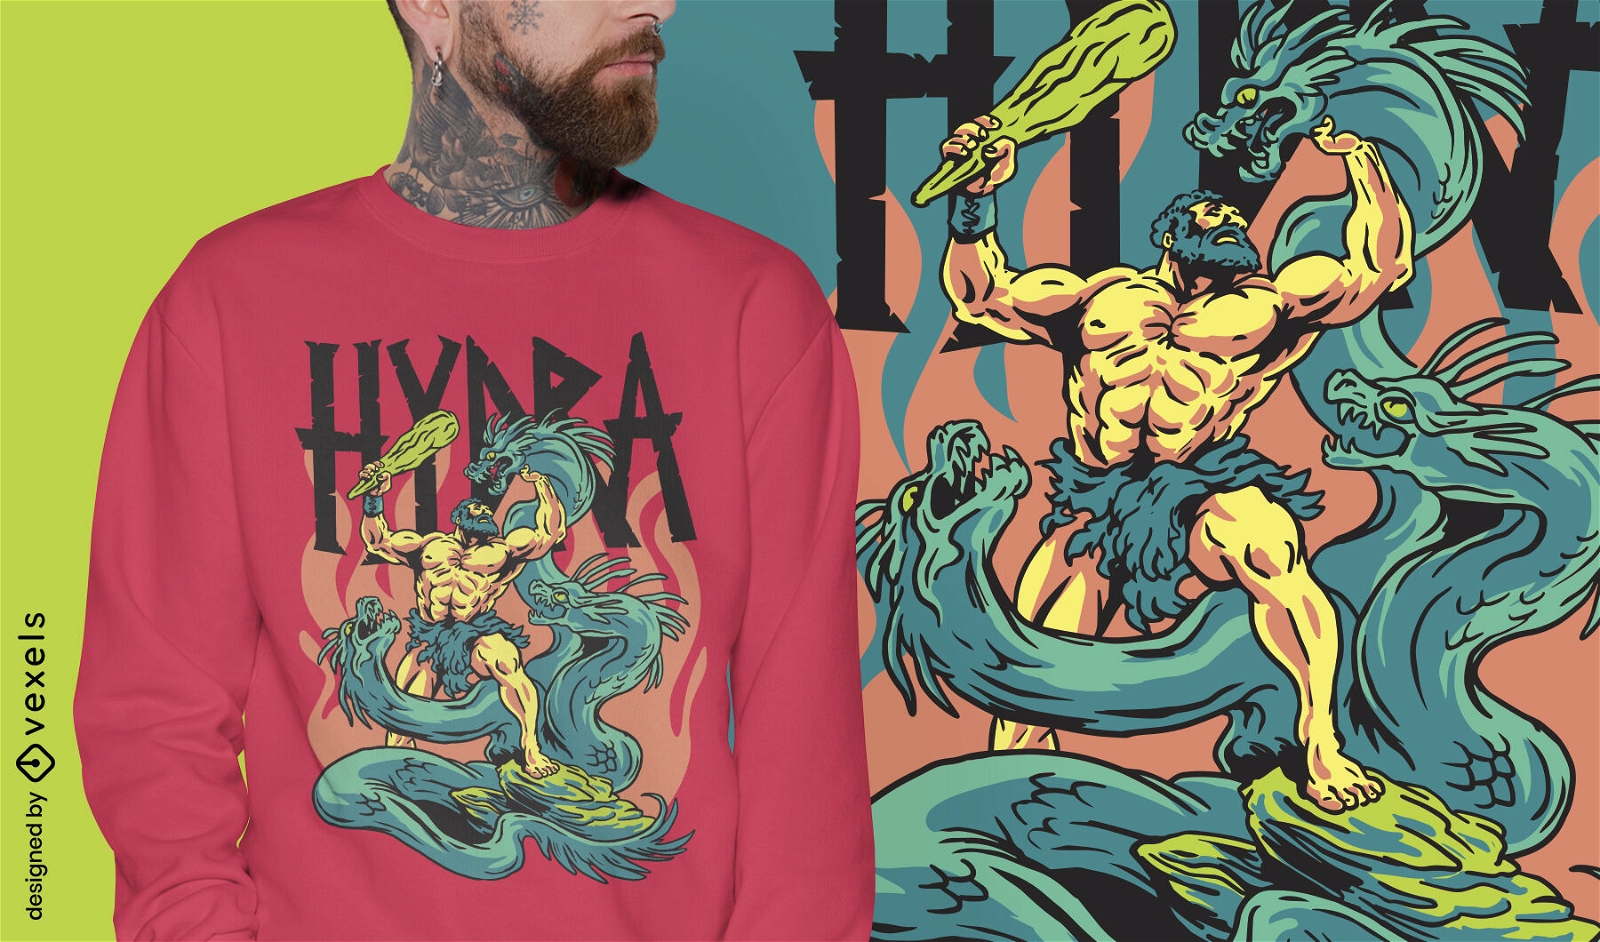 Diseño de camiseta de grecia mítica del monstruo de Hydra